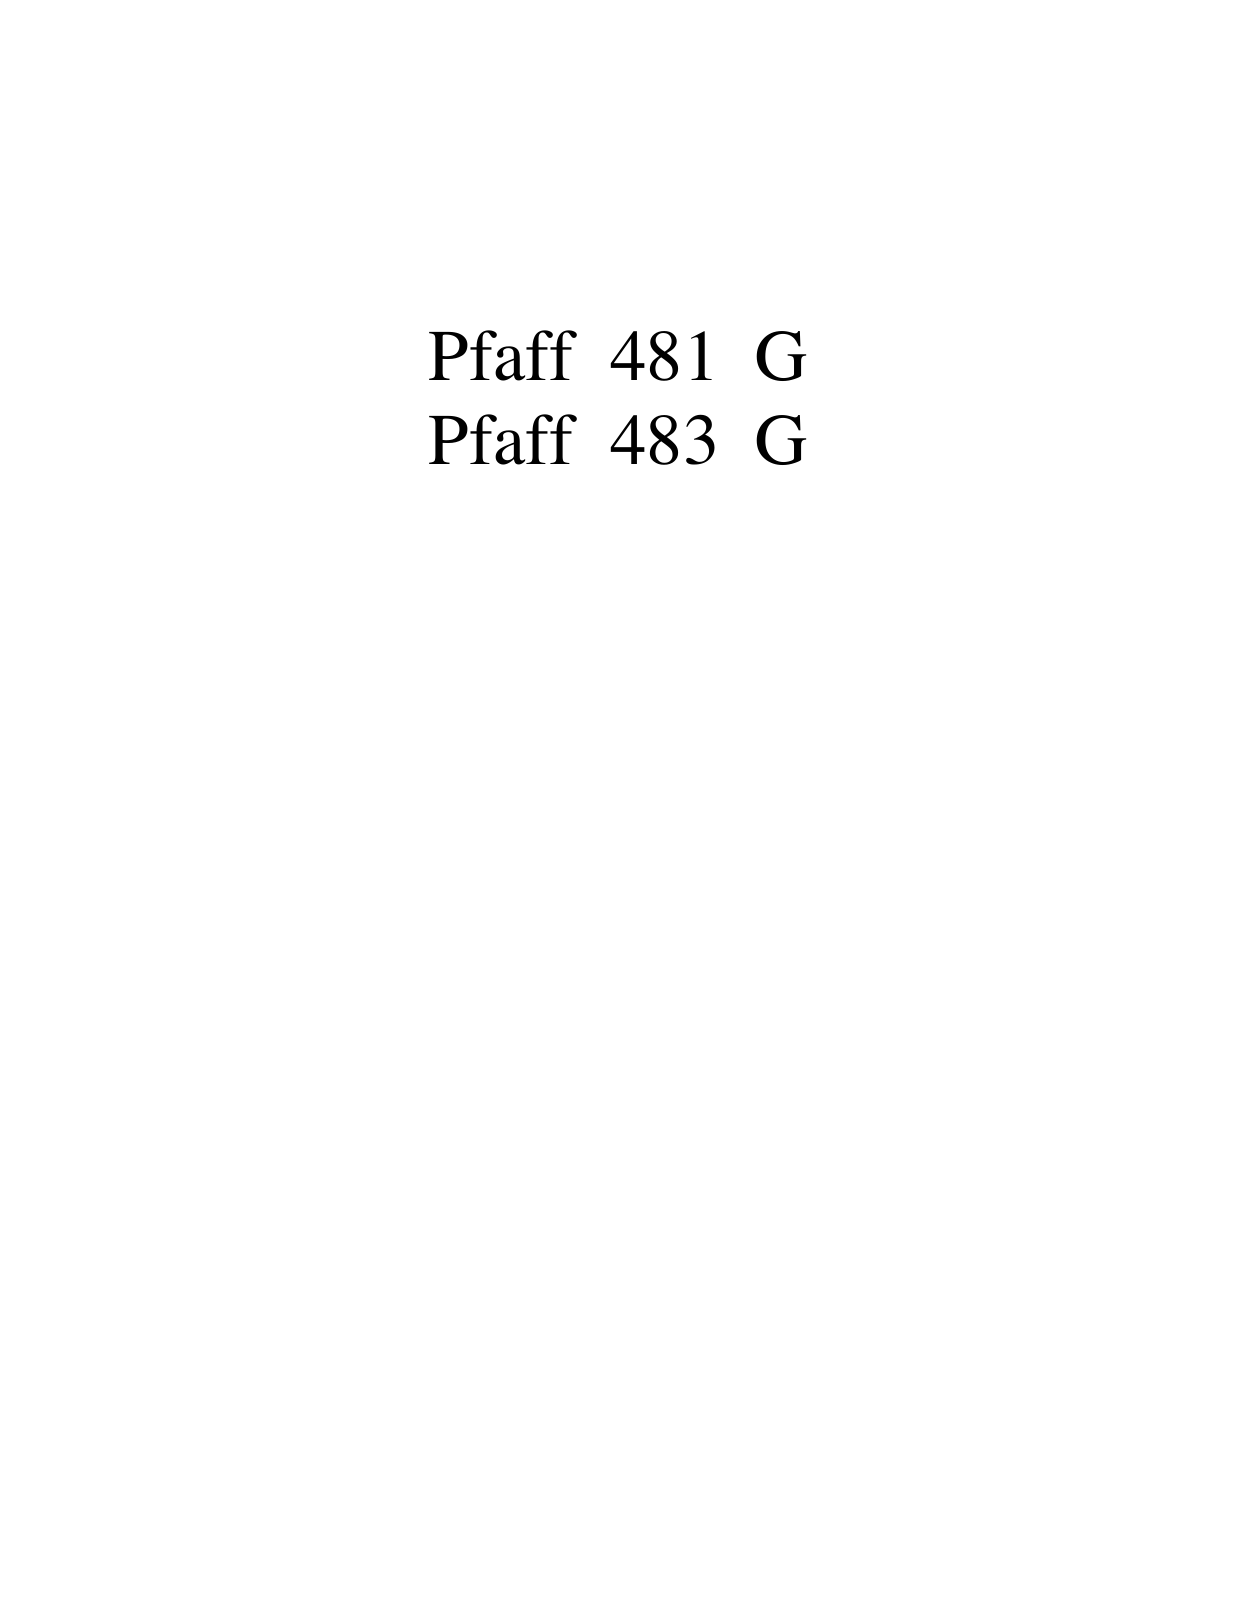 PFAFF 481 G, 483 G Parts List